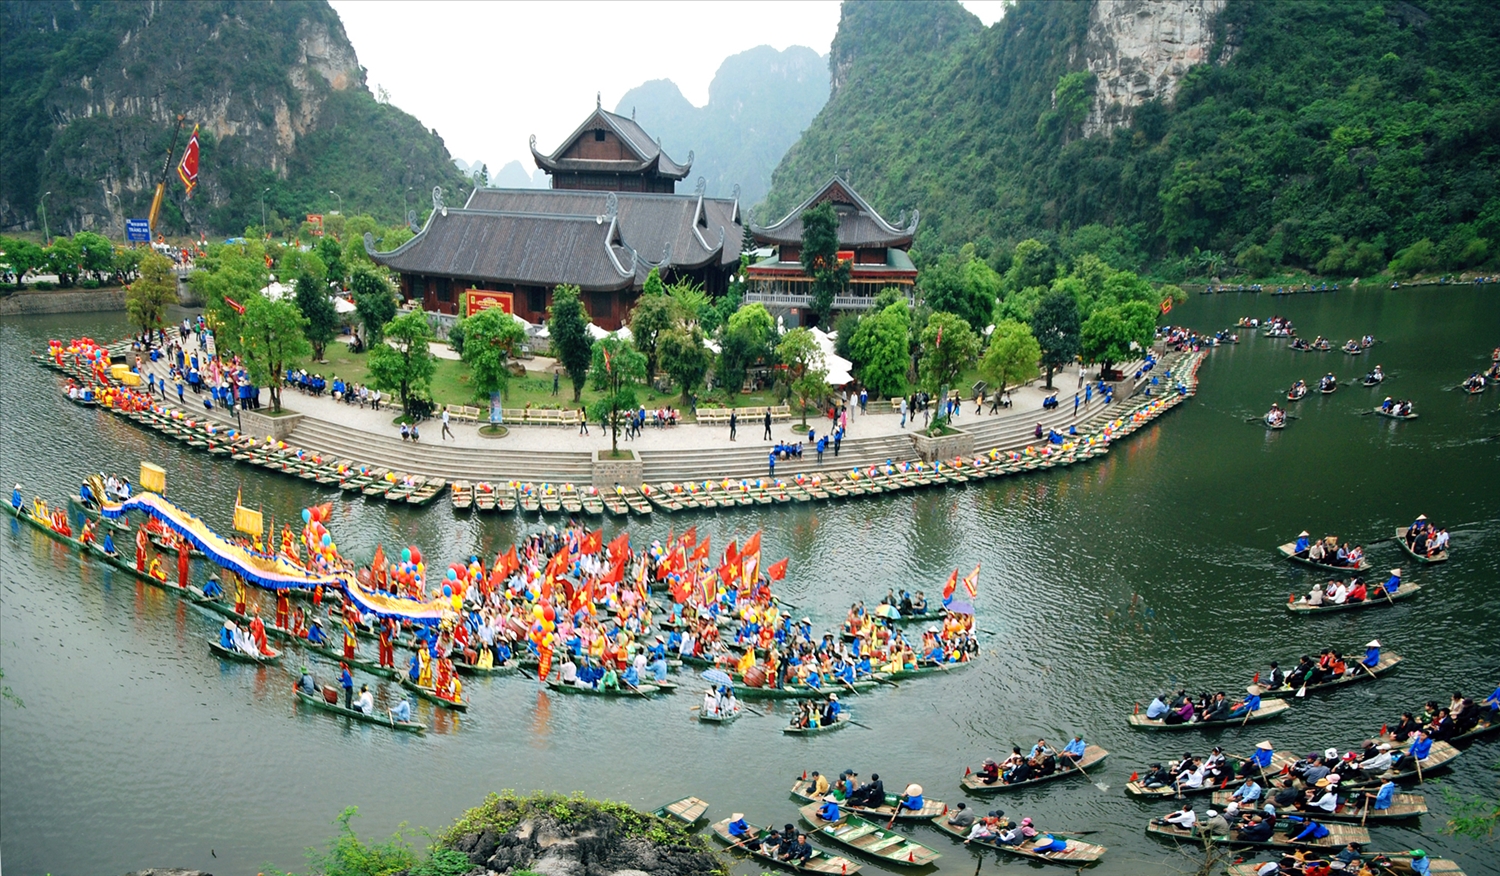 Chương trình thực cảnh biến sông núi Tràng An thành sân khấu, lái đò thành diễn viên  - Ảnh 2.